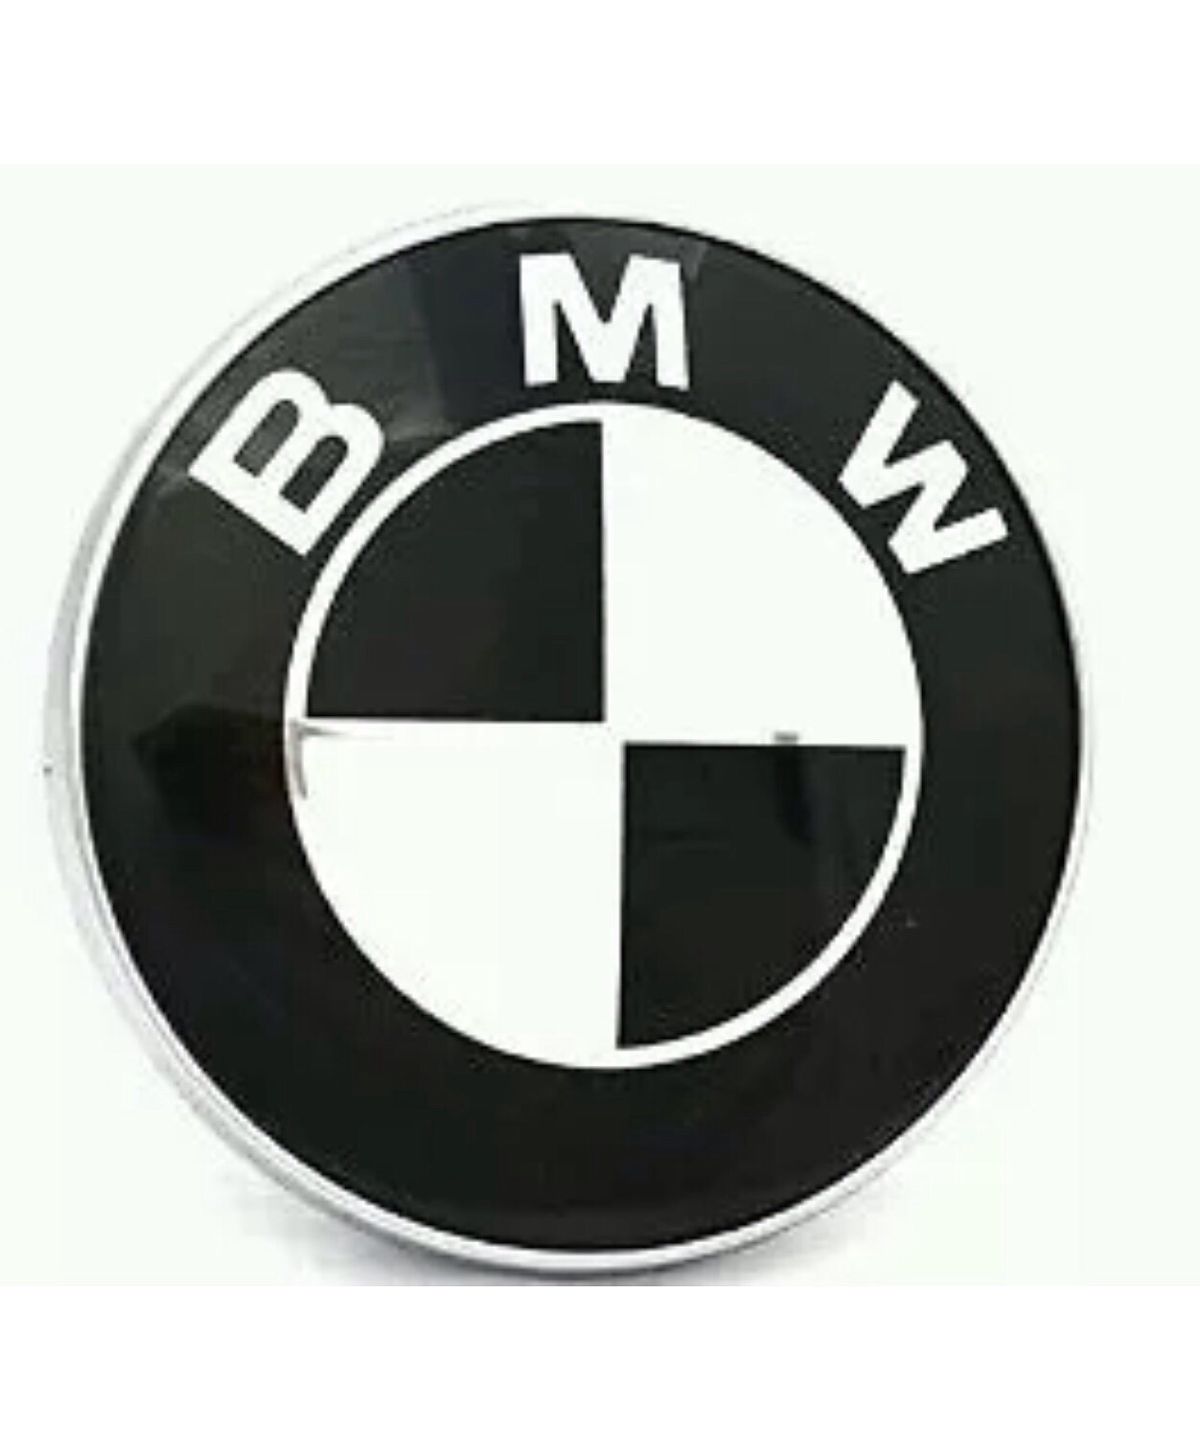 BMW Badge 82mm Bonnet Hood Emblem for E46 E39 E38 E90 E60 Z3 Z4 X3 X5 X6